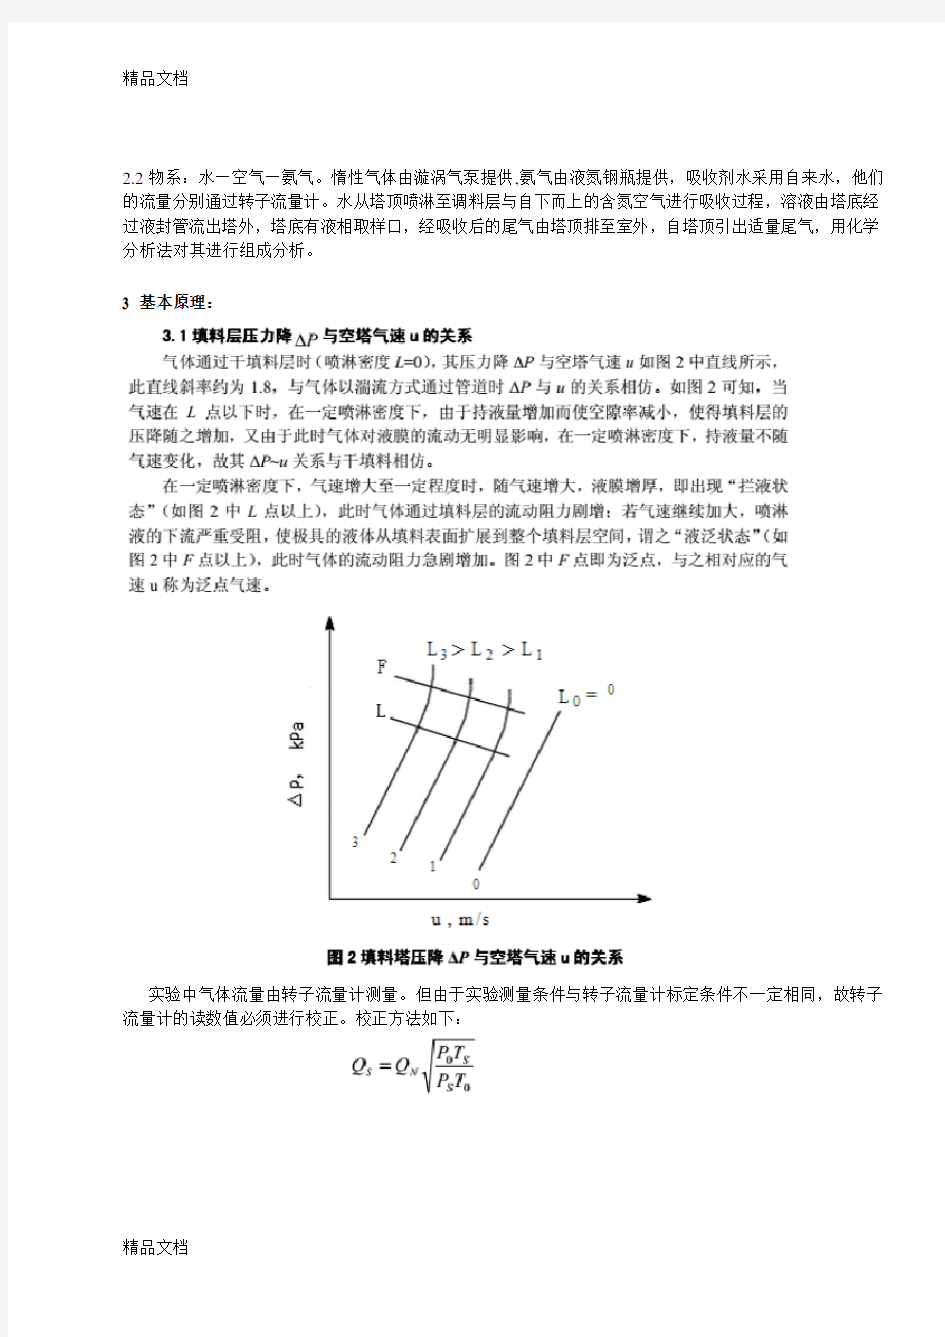 最新浙江大学化工原理实验---填料塔吸收实验报告资料